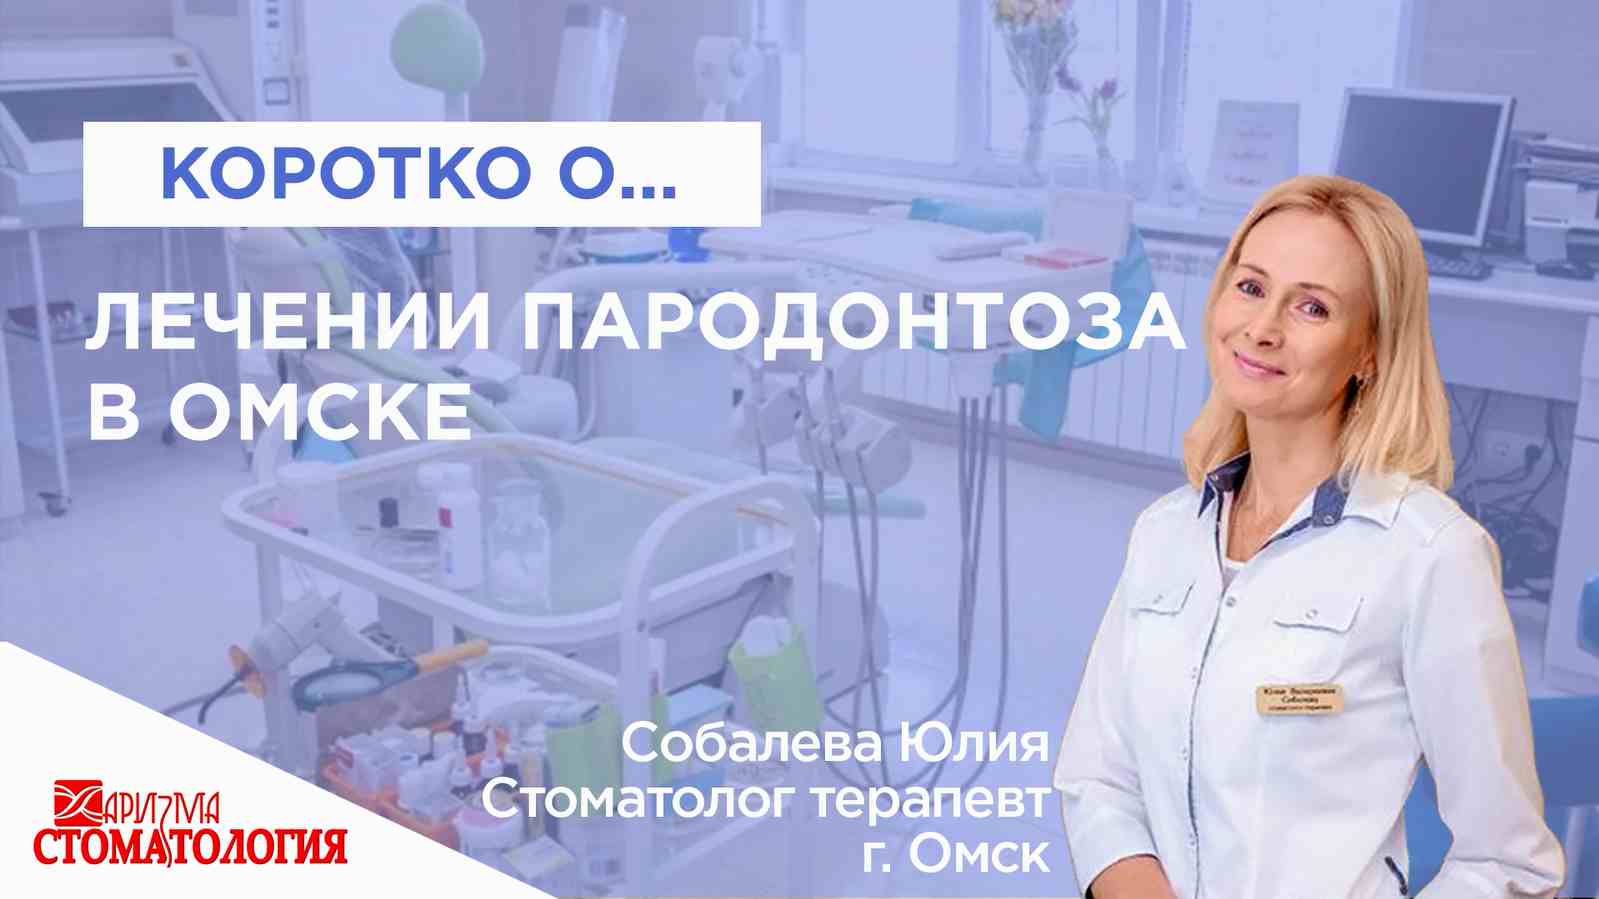 Лечение пародонтоза в Омске по доступной цене в Омске в клинике Харизма недорого 